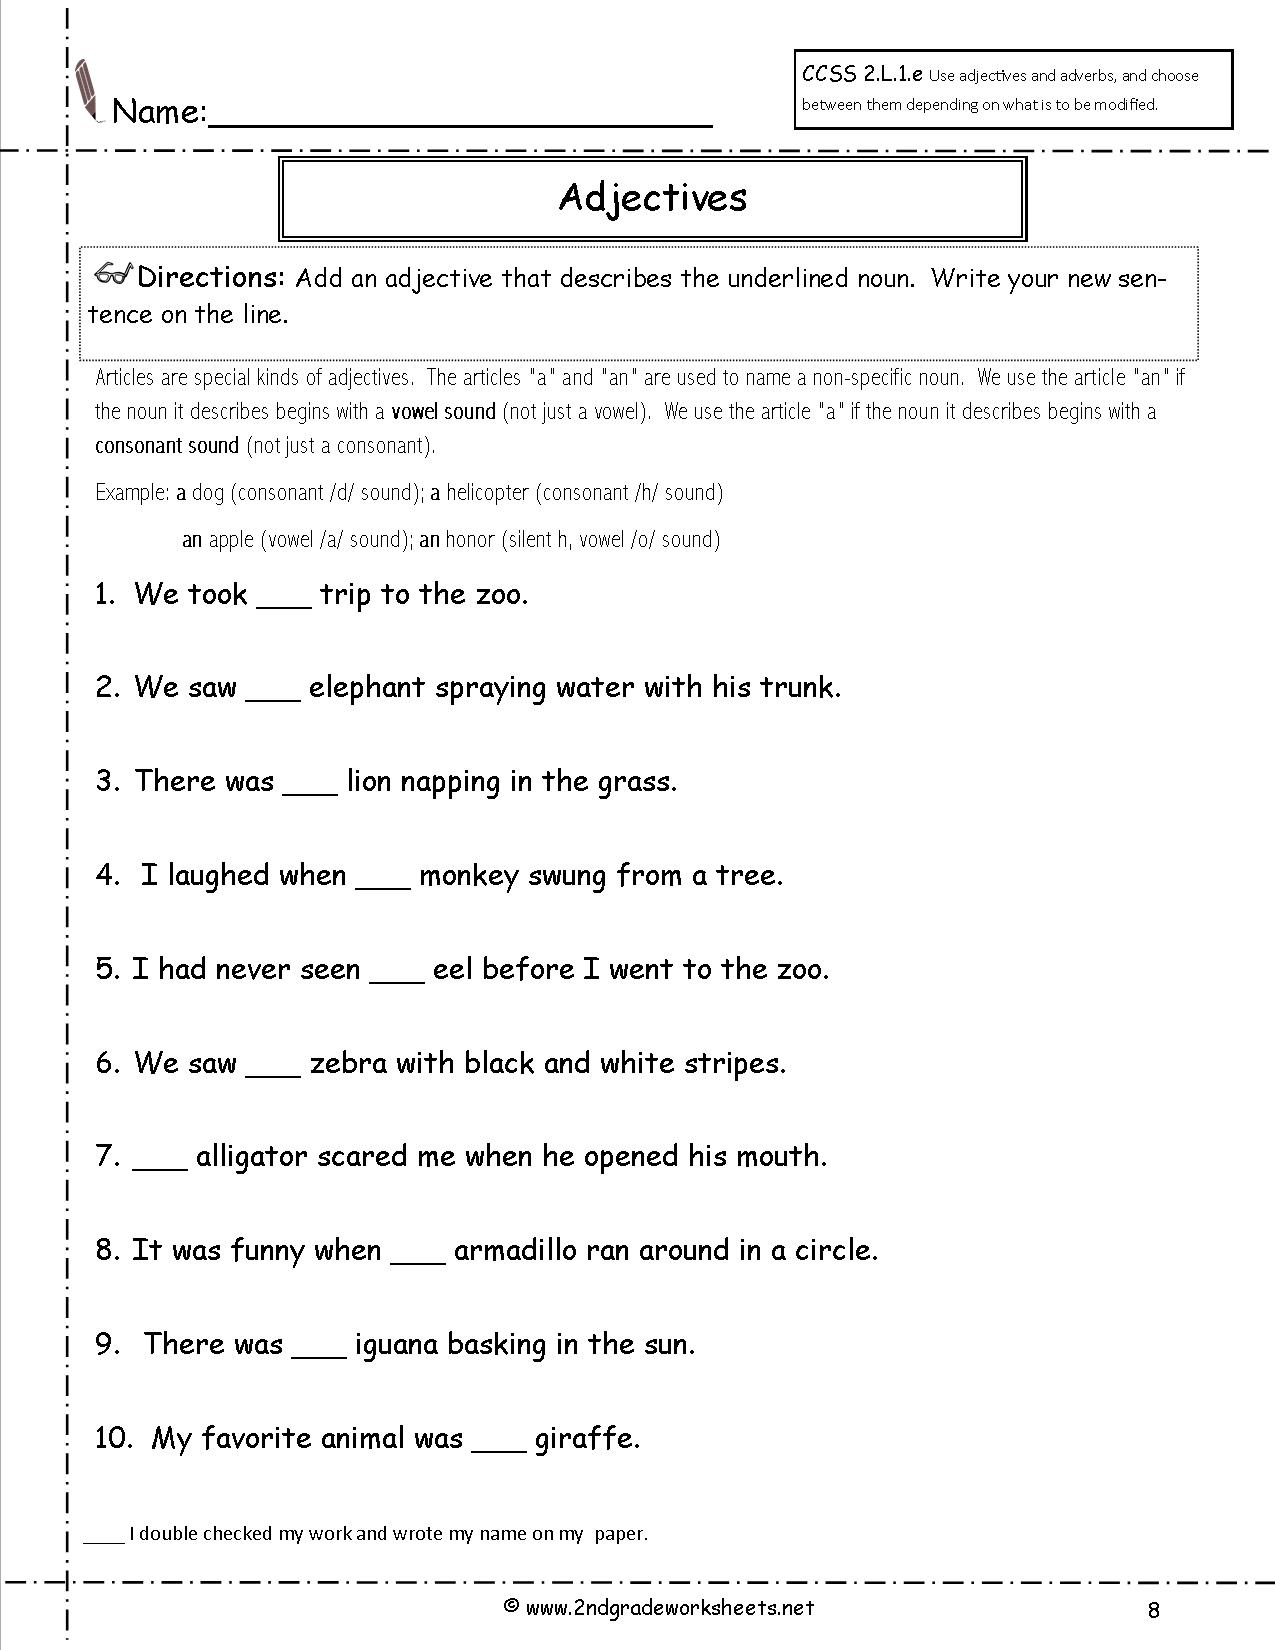 14 Best Images Of Forming Sentences Worksheets 2nd Grade Grammar Worksheets Adjectives